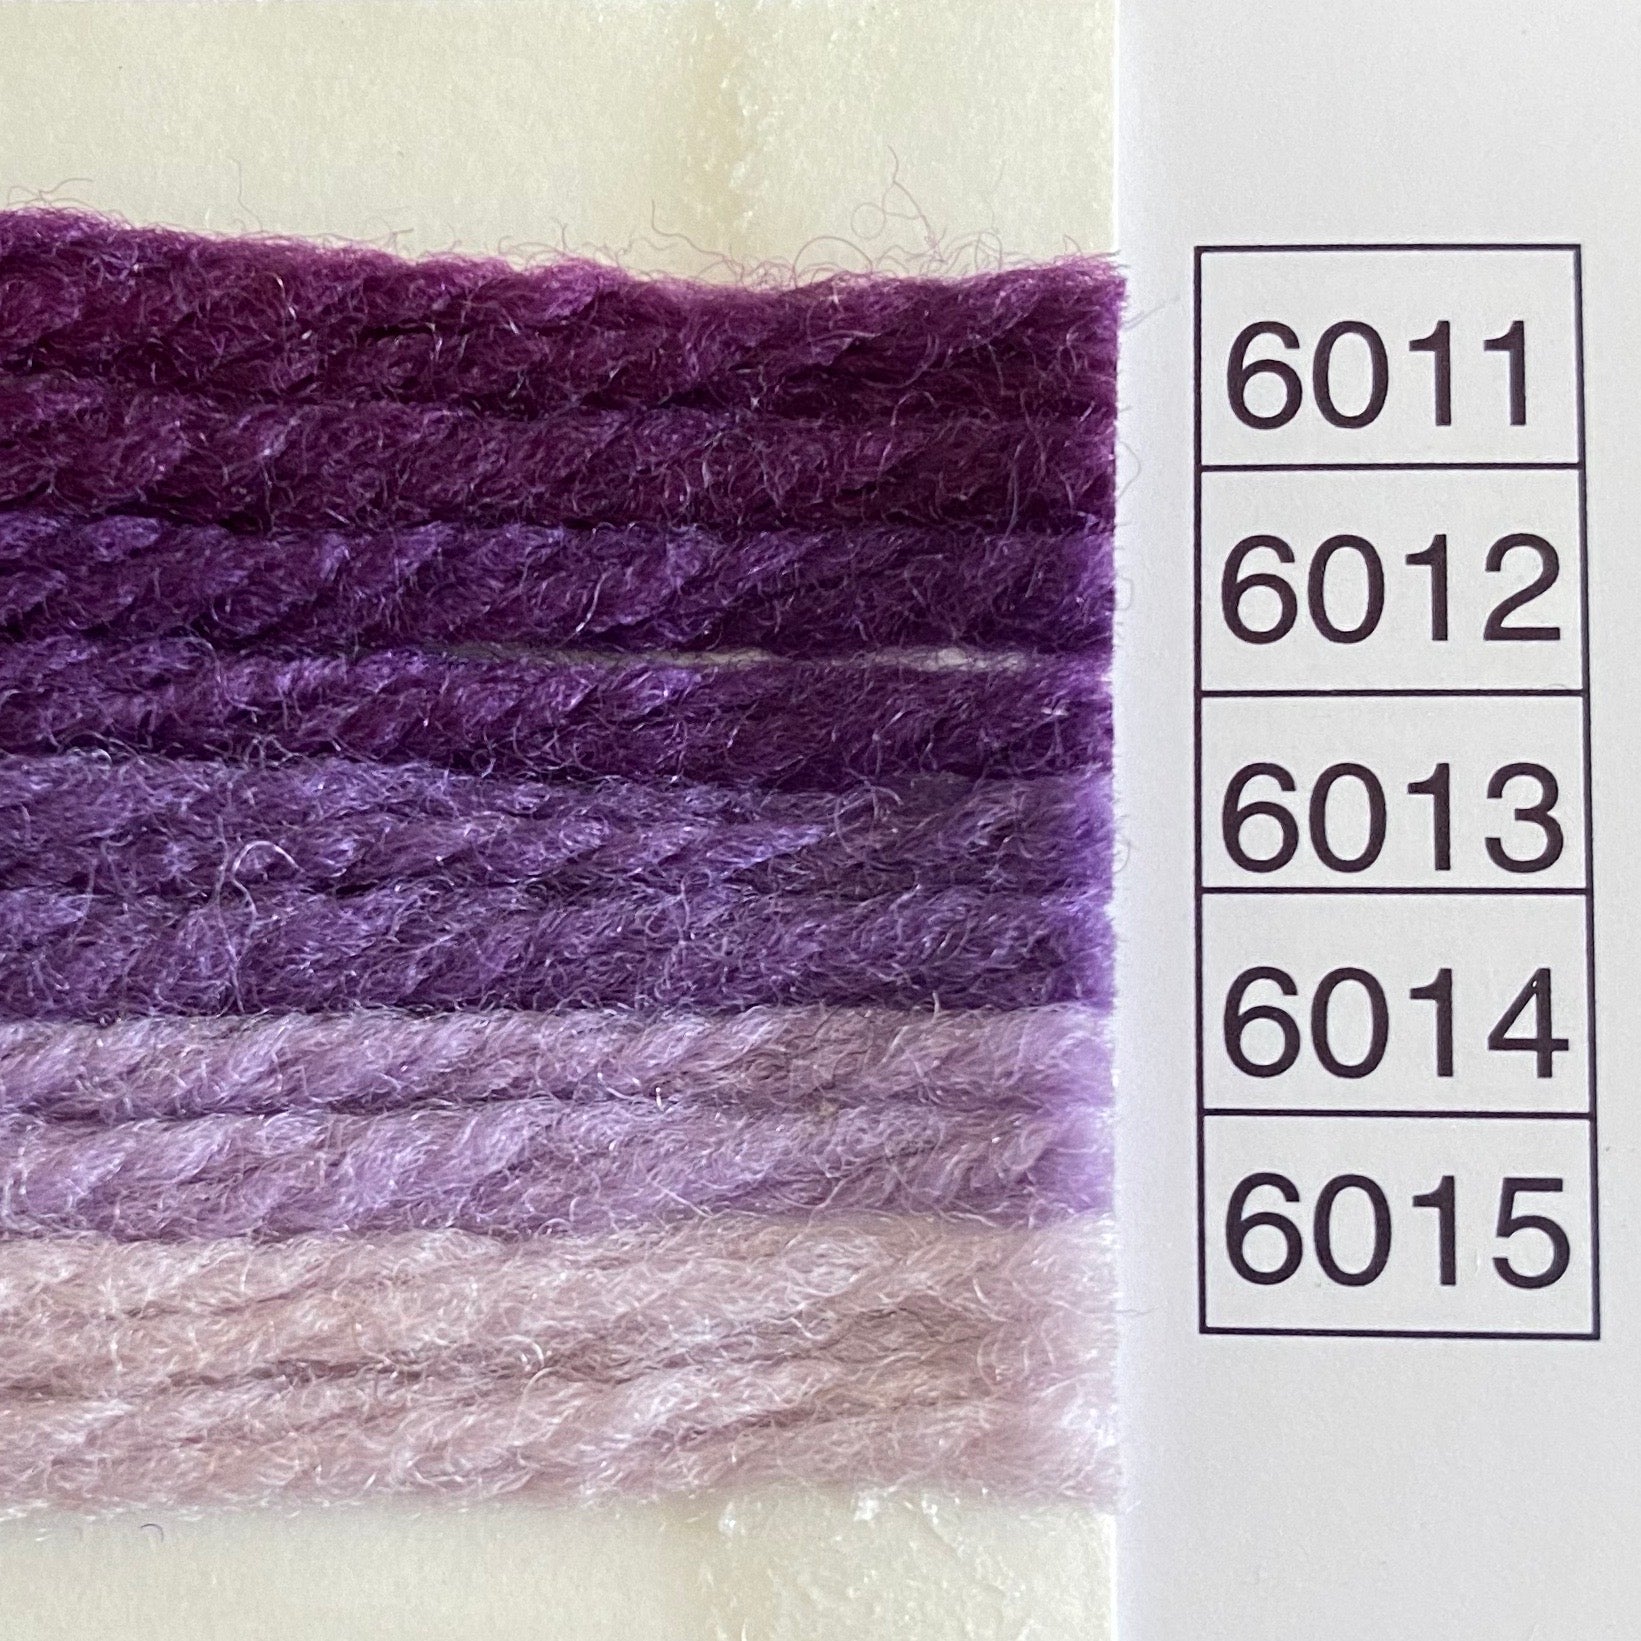 Waverly Wool (5100 - 7049)